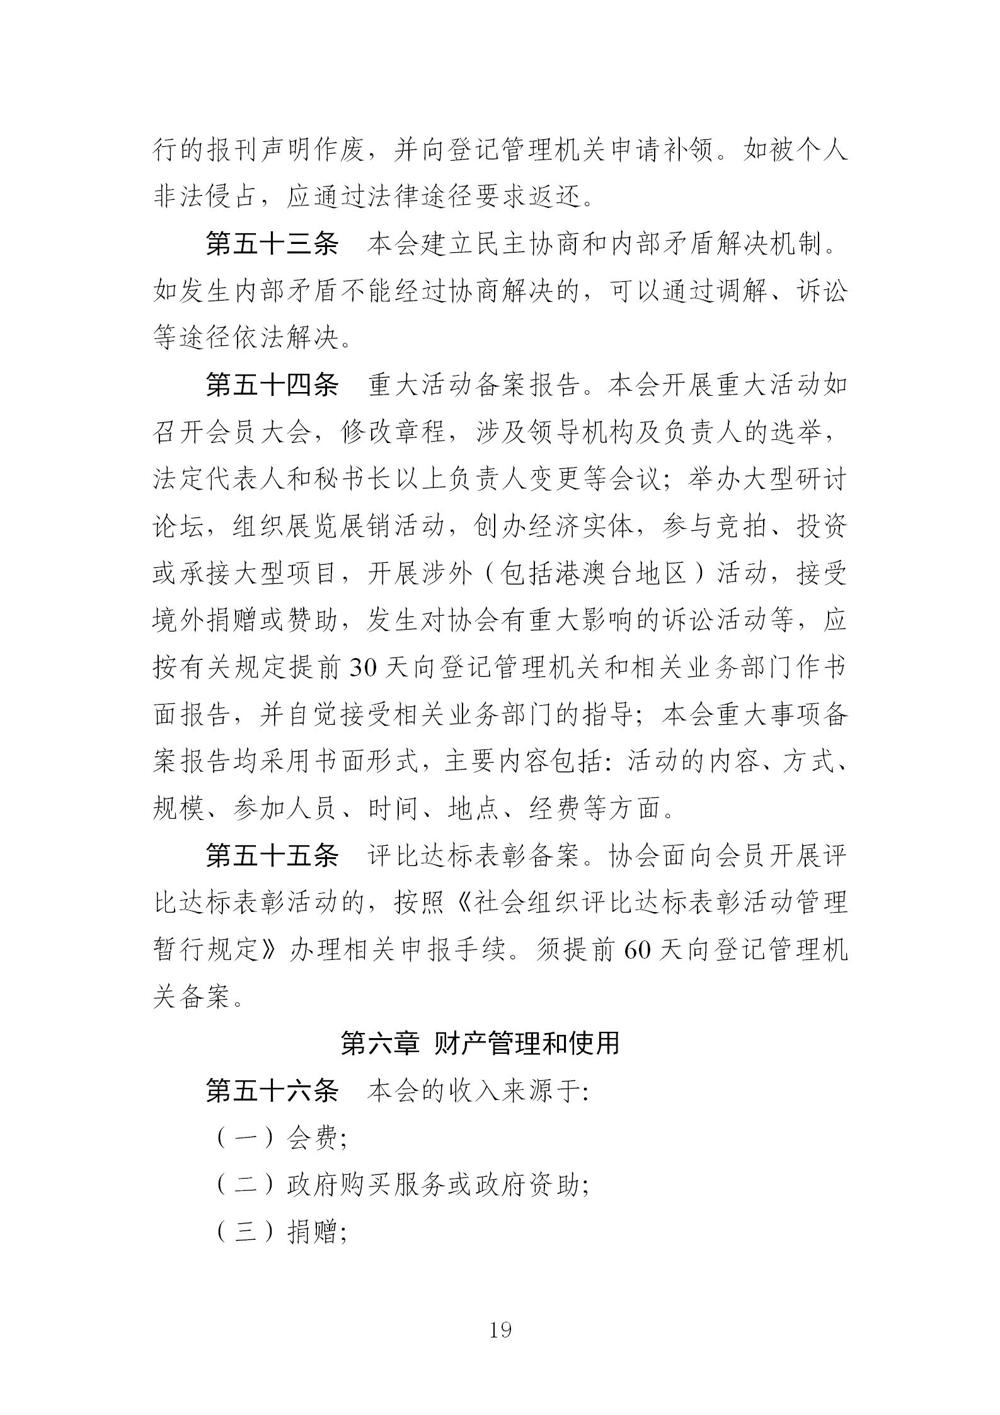 3-广东省羽毛球协会新章程20221107-根据民政厅修改意见修改_19